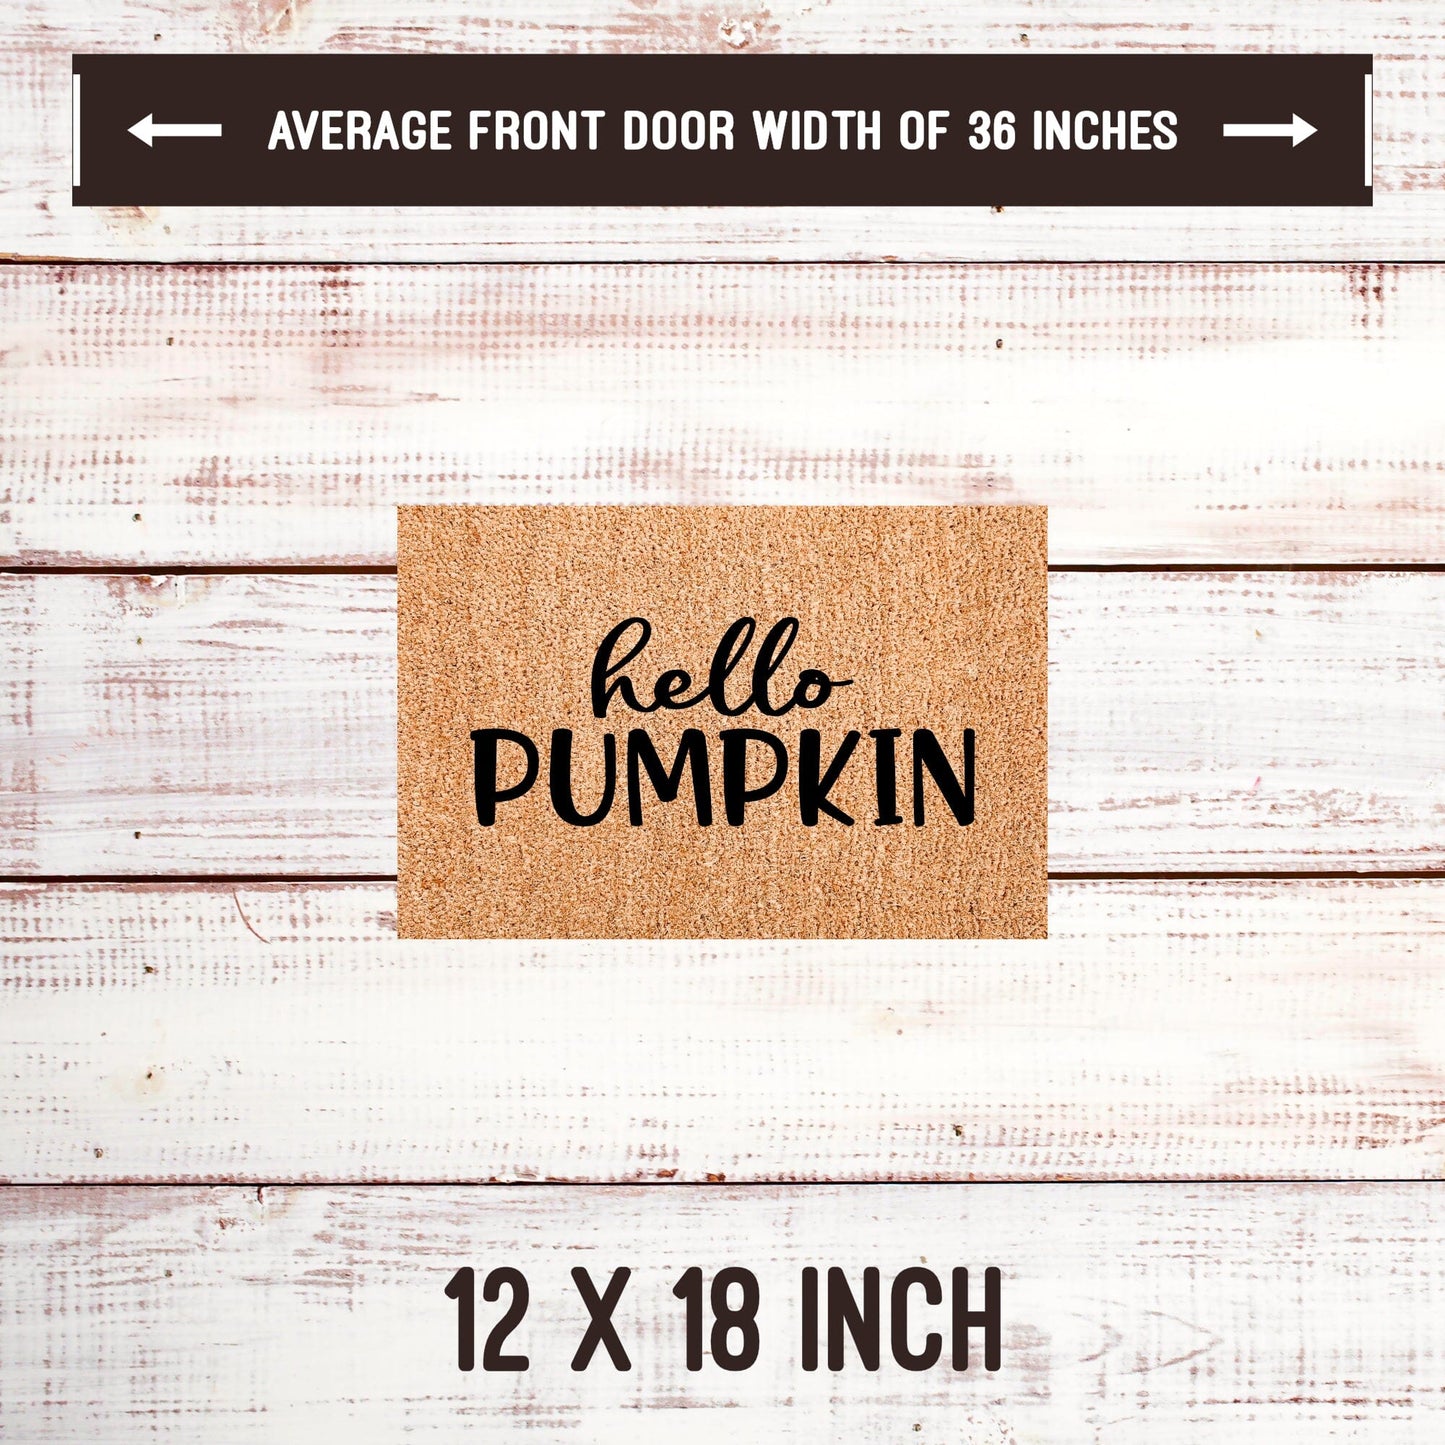 Hello Pumpkin Door Mats teelaunch 12x18 Inches 